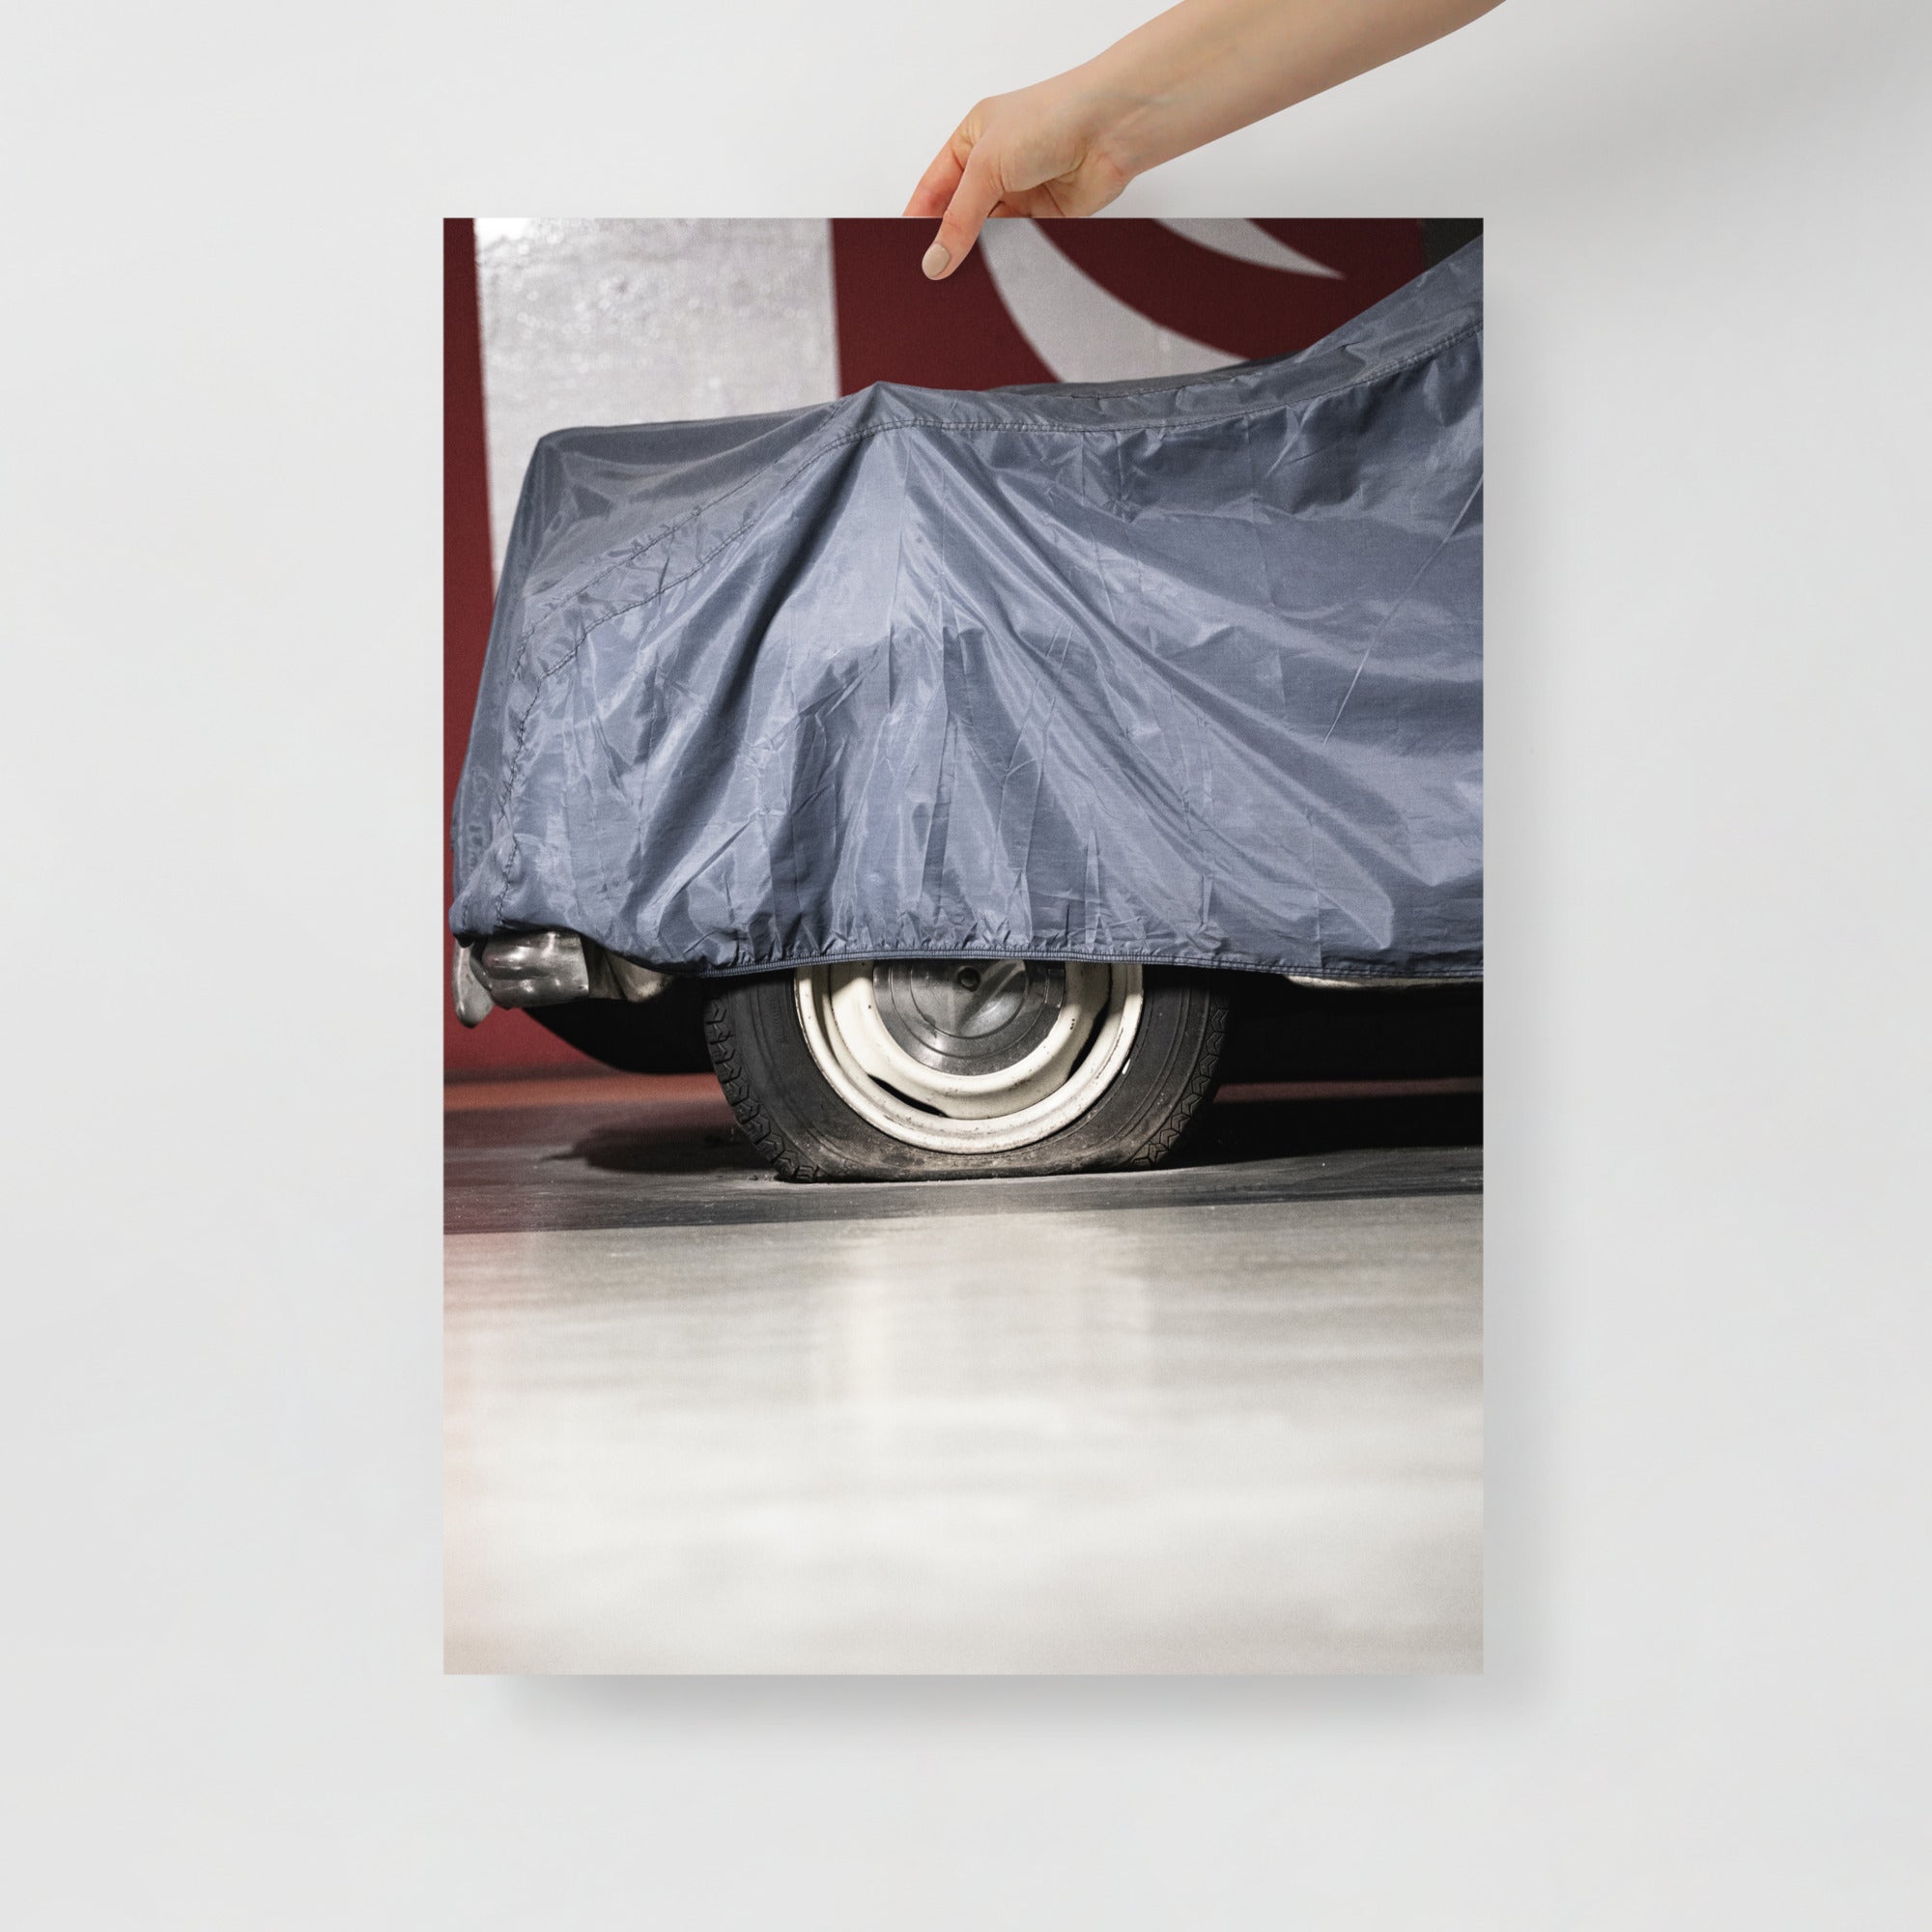 Poster mural - Une voiture abandonnée – Photographie de vielle voiture – Poster photo, poster XXL, photographie murale et des posters muraux unique au monde. La boutique de posters créée par Yann Peccard un Photographe français.